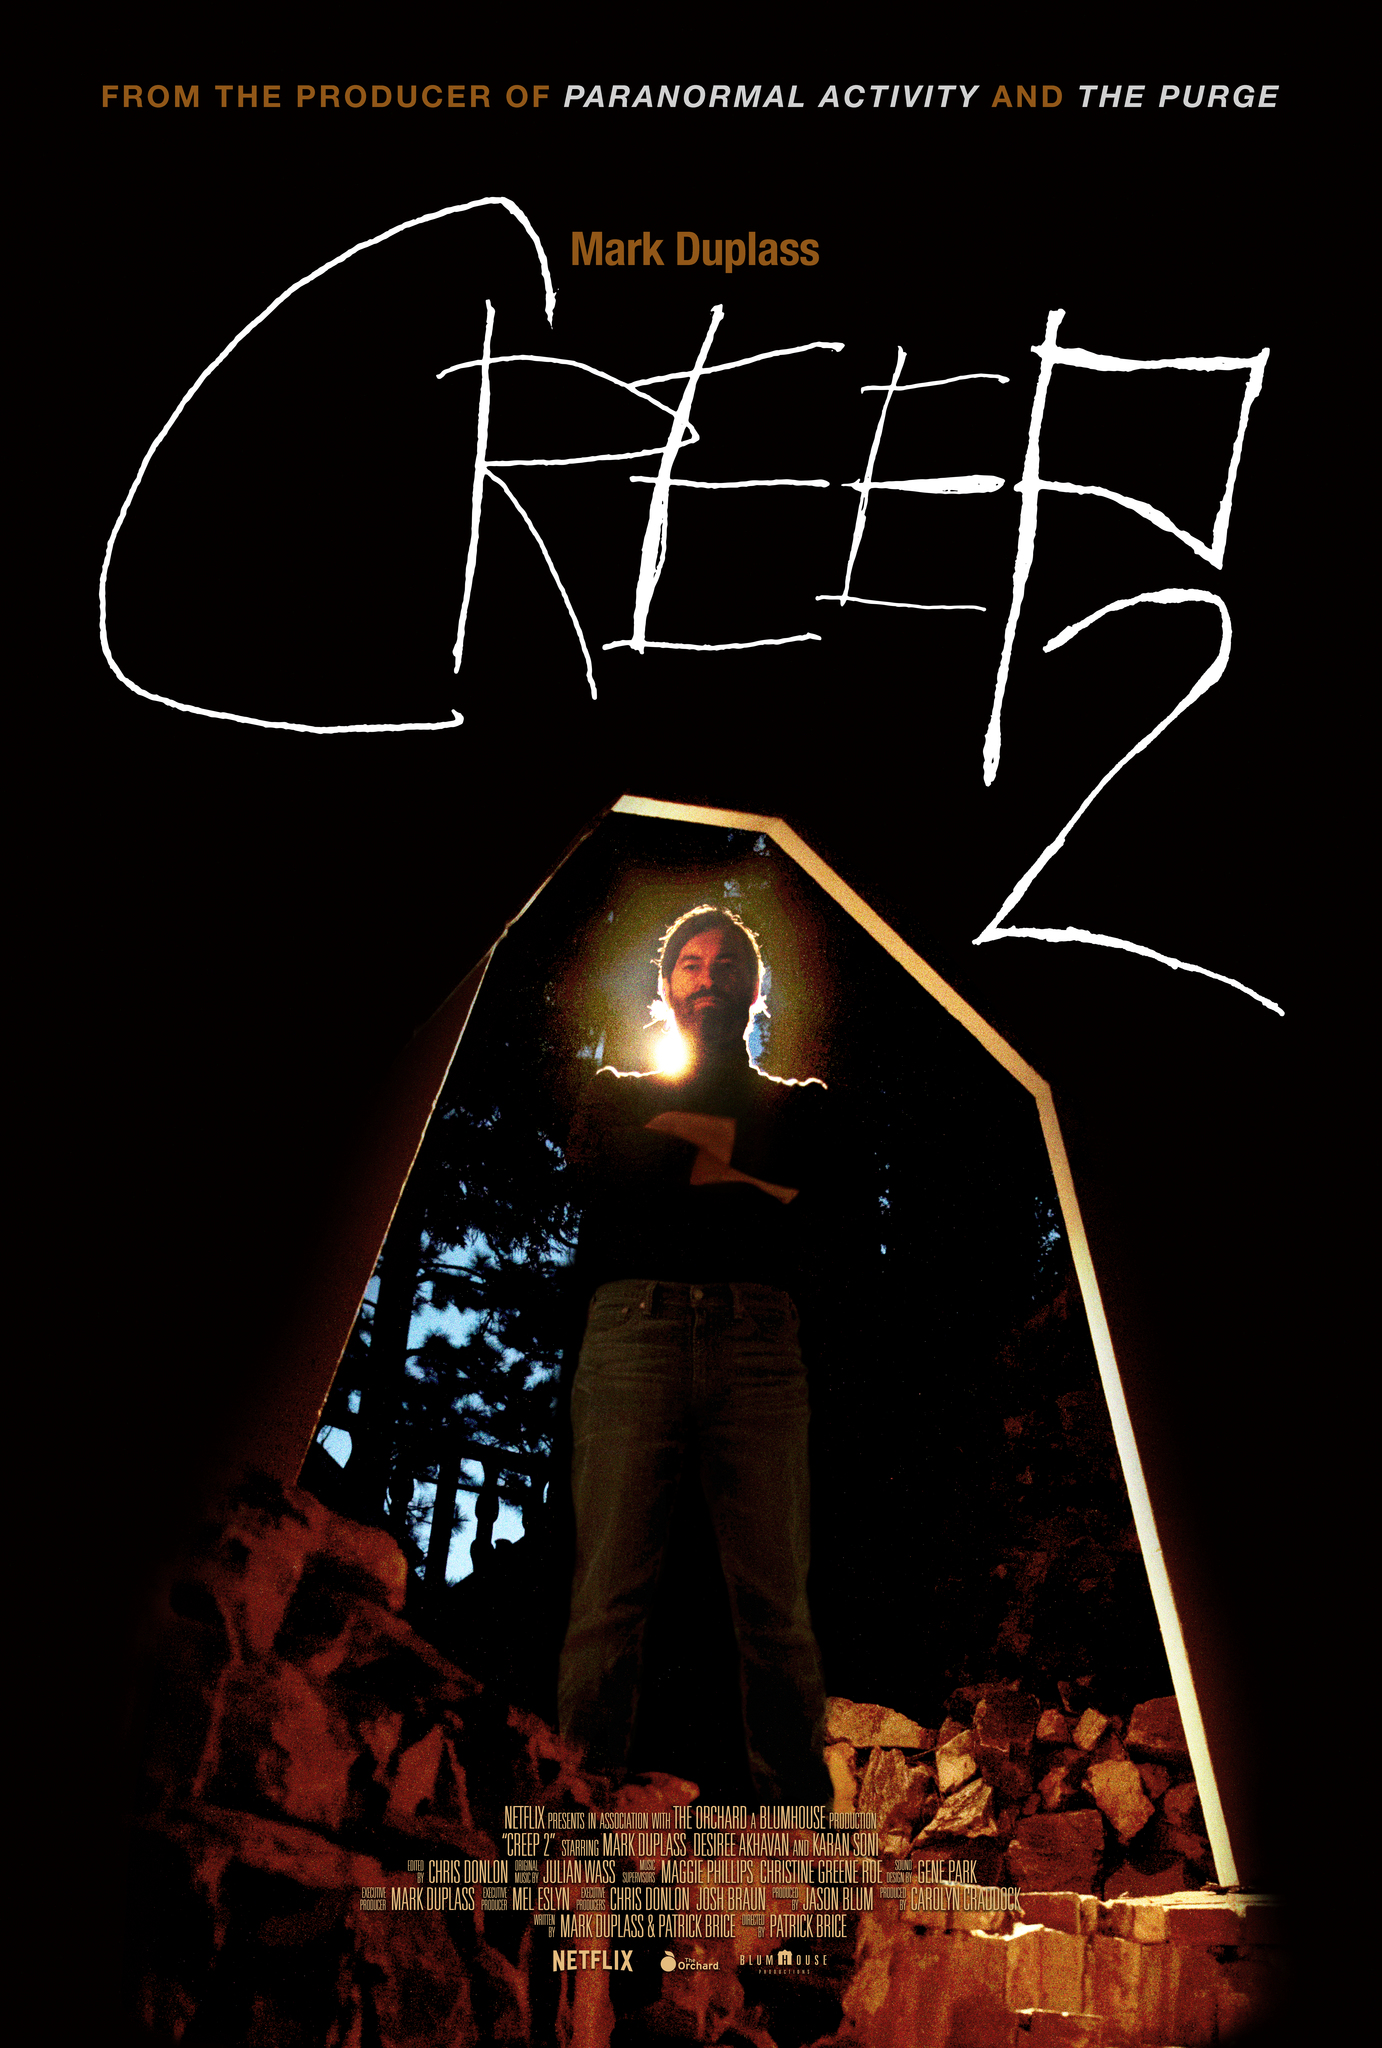 Nonton film Creep 2 layarkaca21 indoxx1 ganool online streaming terbaru